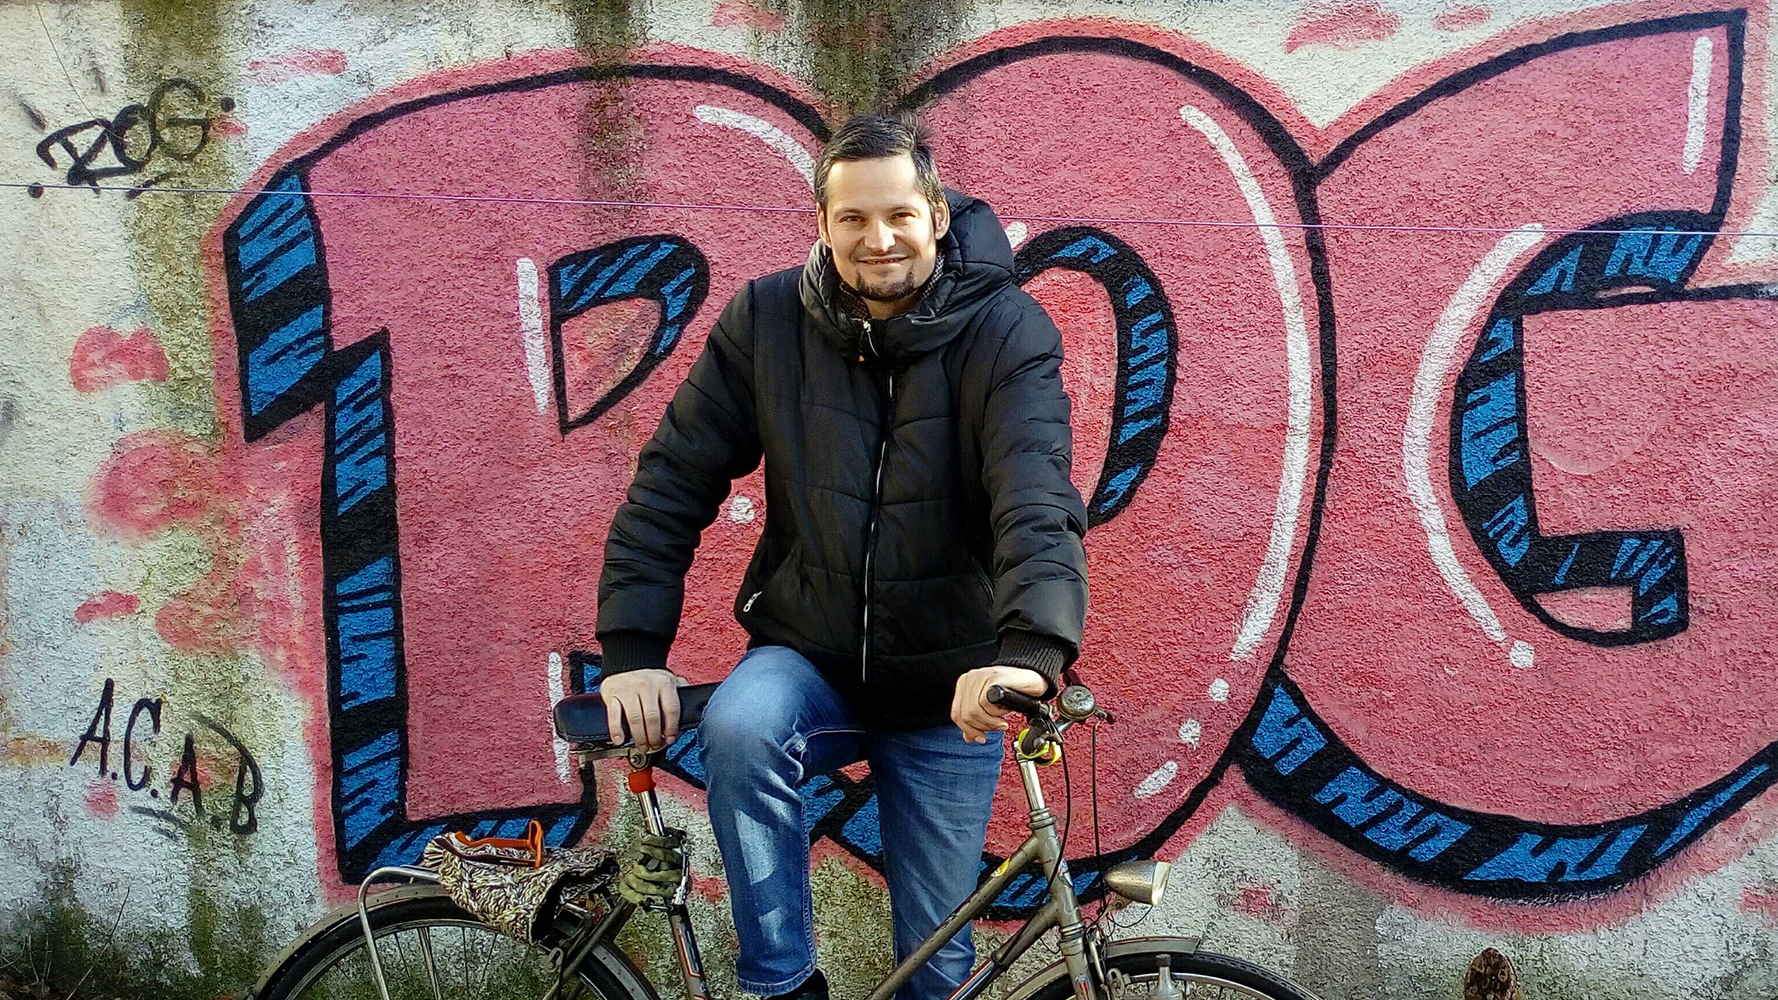 Bicycle Mayor Janez